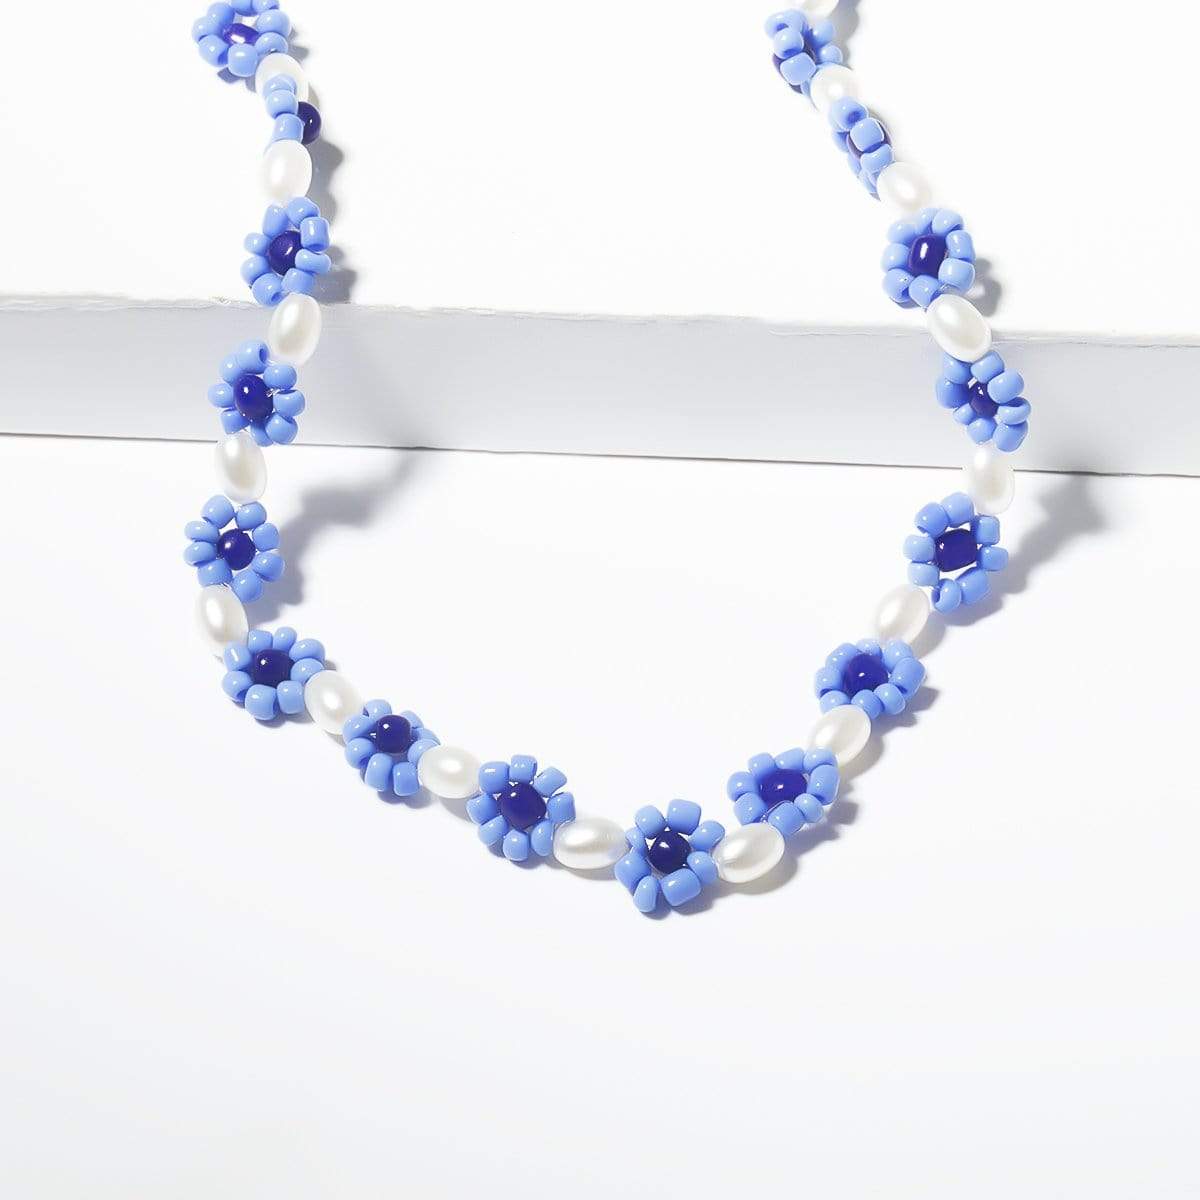 Daisy Flower Hoops /Beaded Daisy Bracelet: Seed Bead Daisy Chain Necklace  Tutorial/Eyeglass Chain. - YouTube